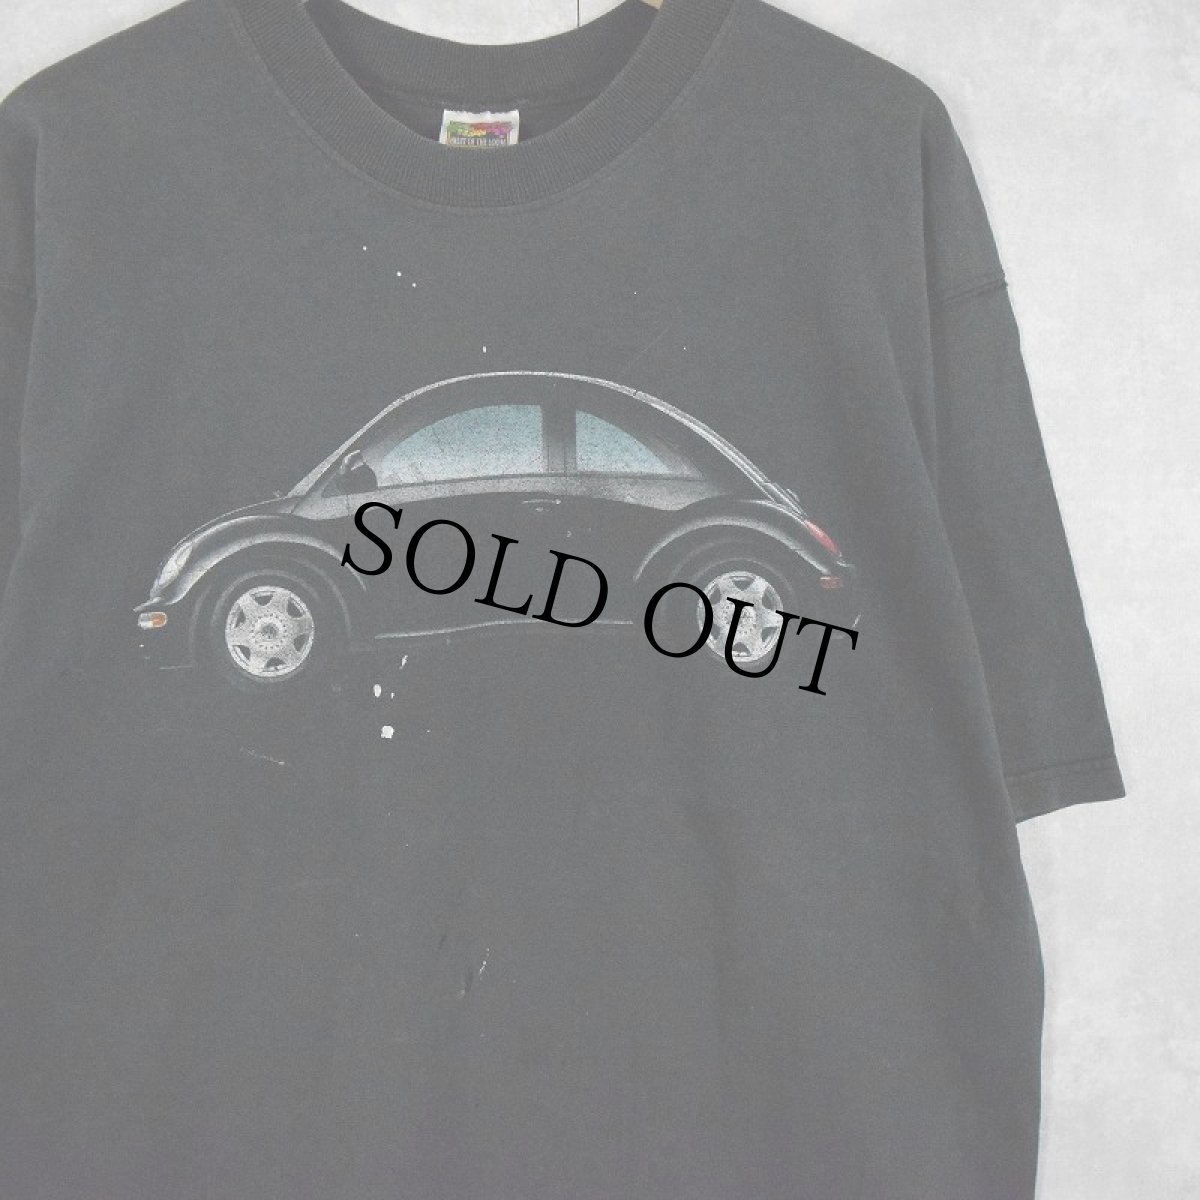 画像1: 2000's Volkswagen 自動車プリントTシャツ BLACK L (1)